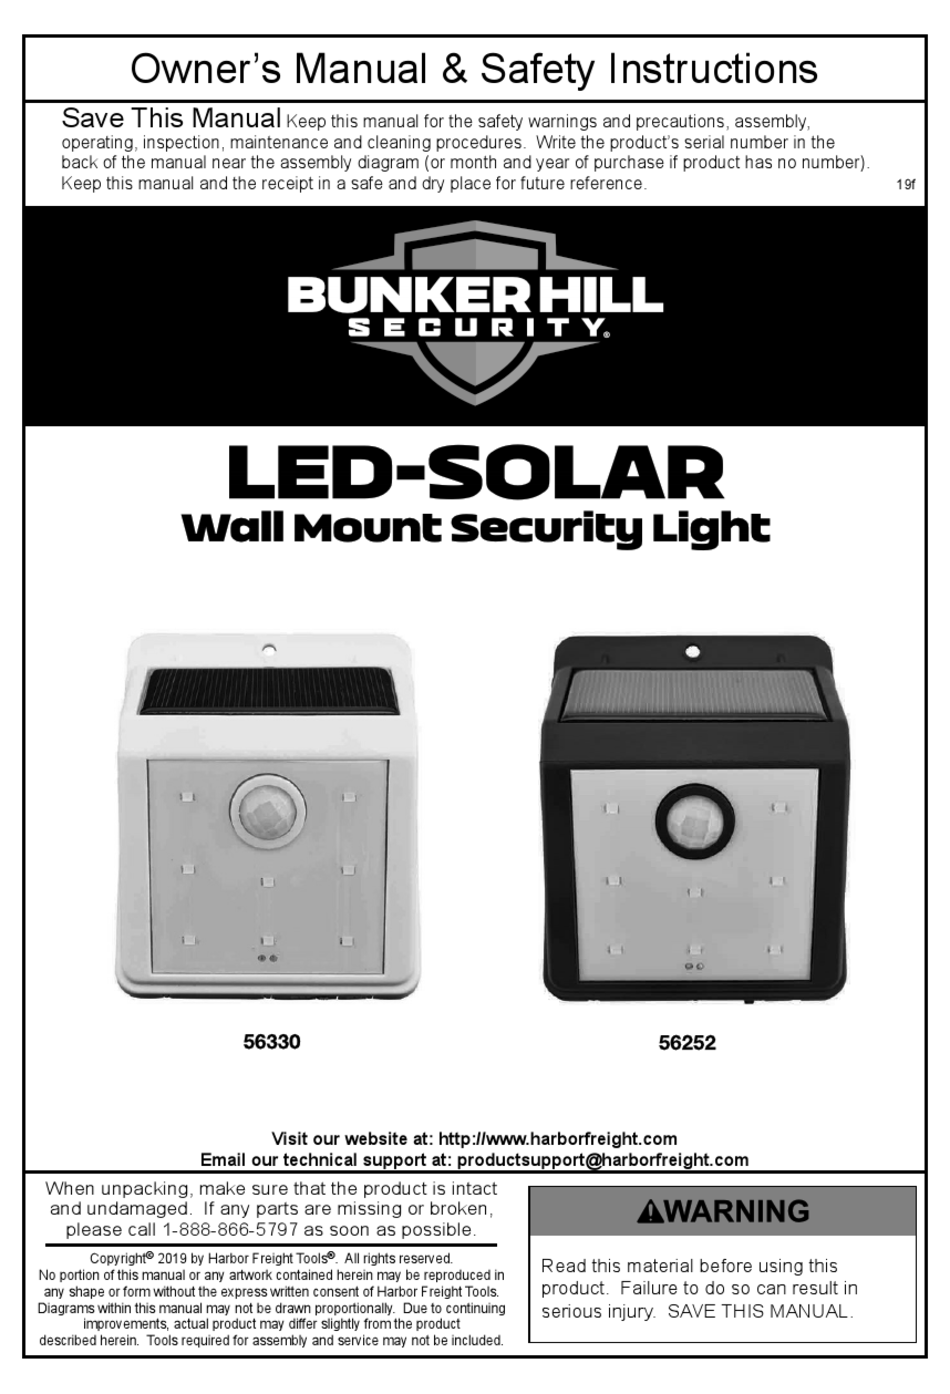 bunker hill digital safe 45891 manual